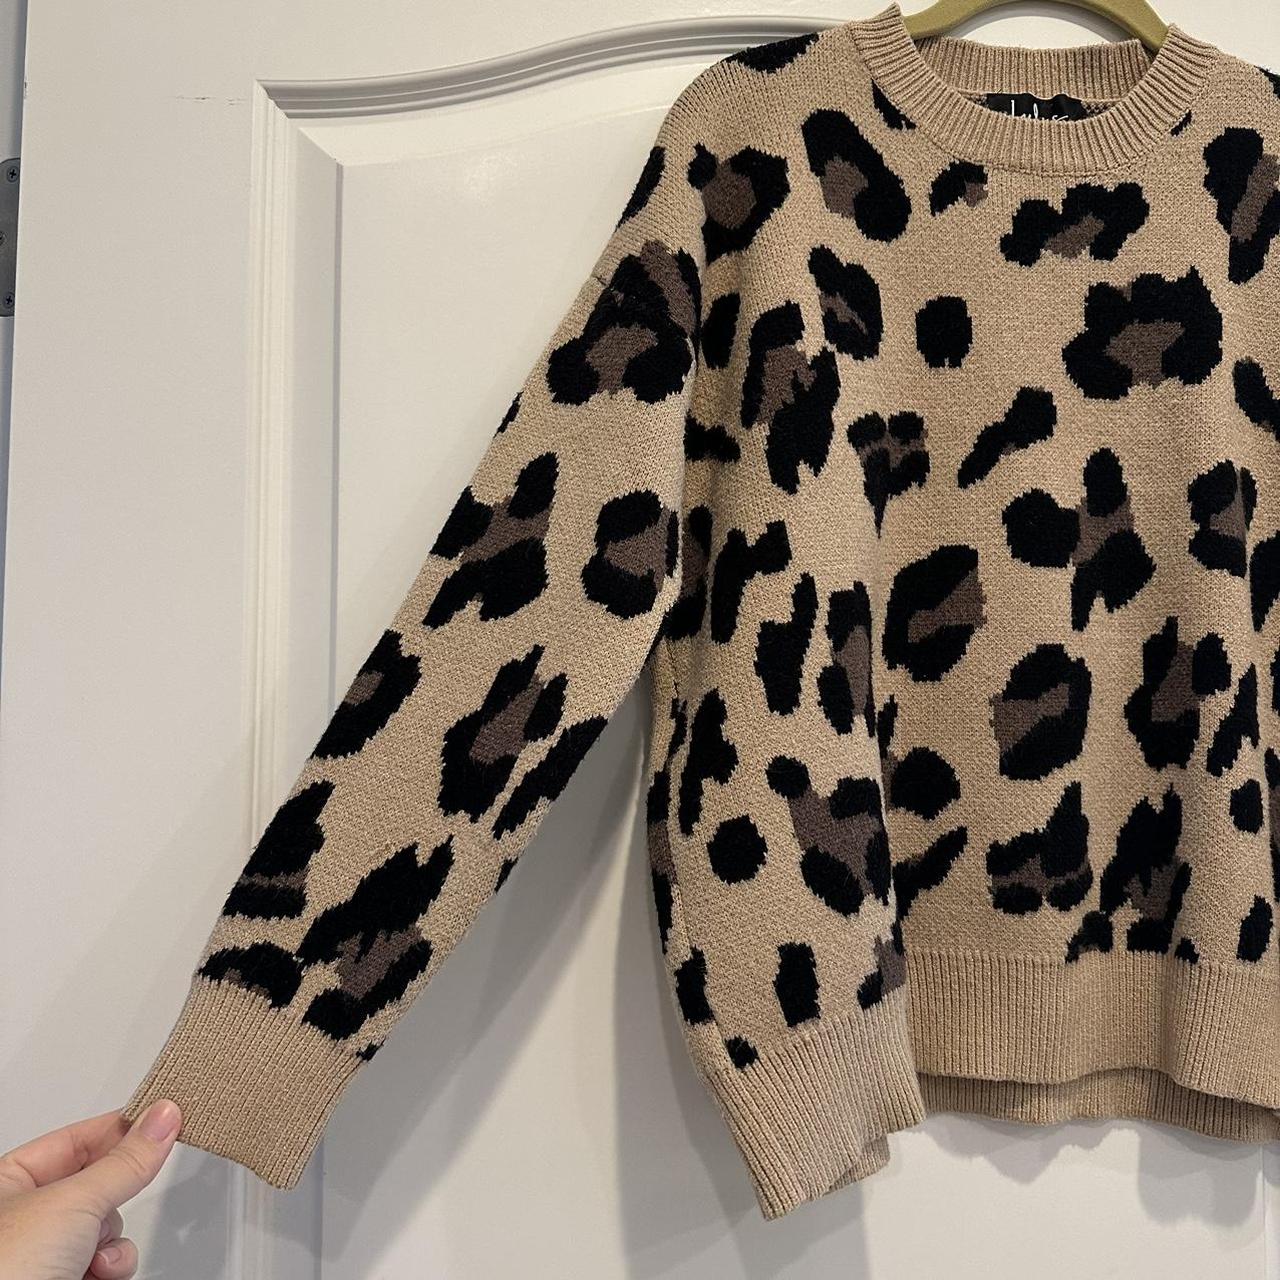 Roam Free Beige Leopard Print Knit Sweater